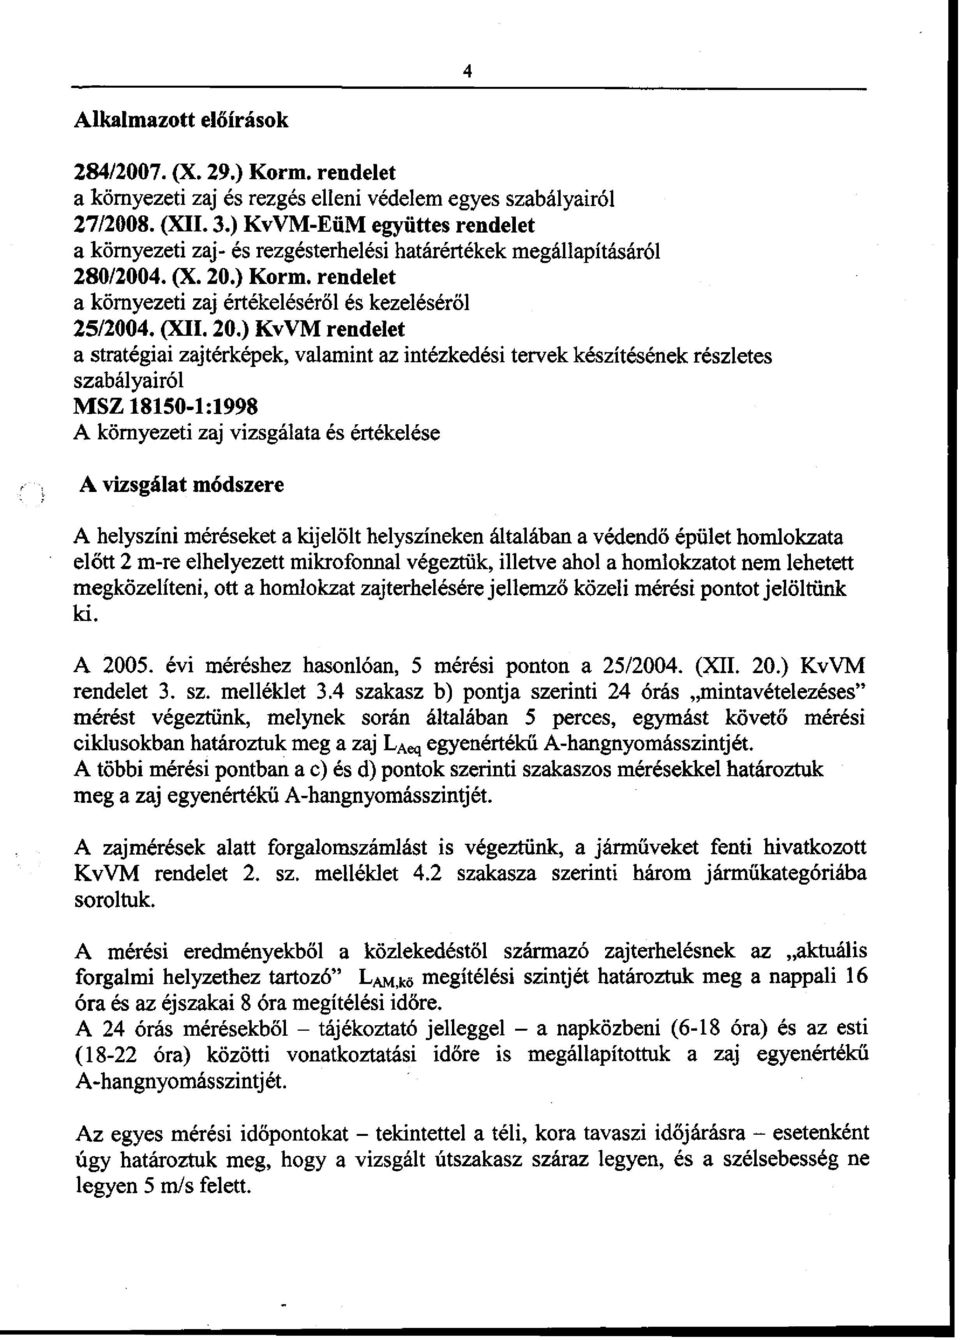 ) Korm. rendelet a környezeti zaj értékeléséről és kezeléséről 25/2004. (XII. 20.